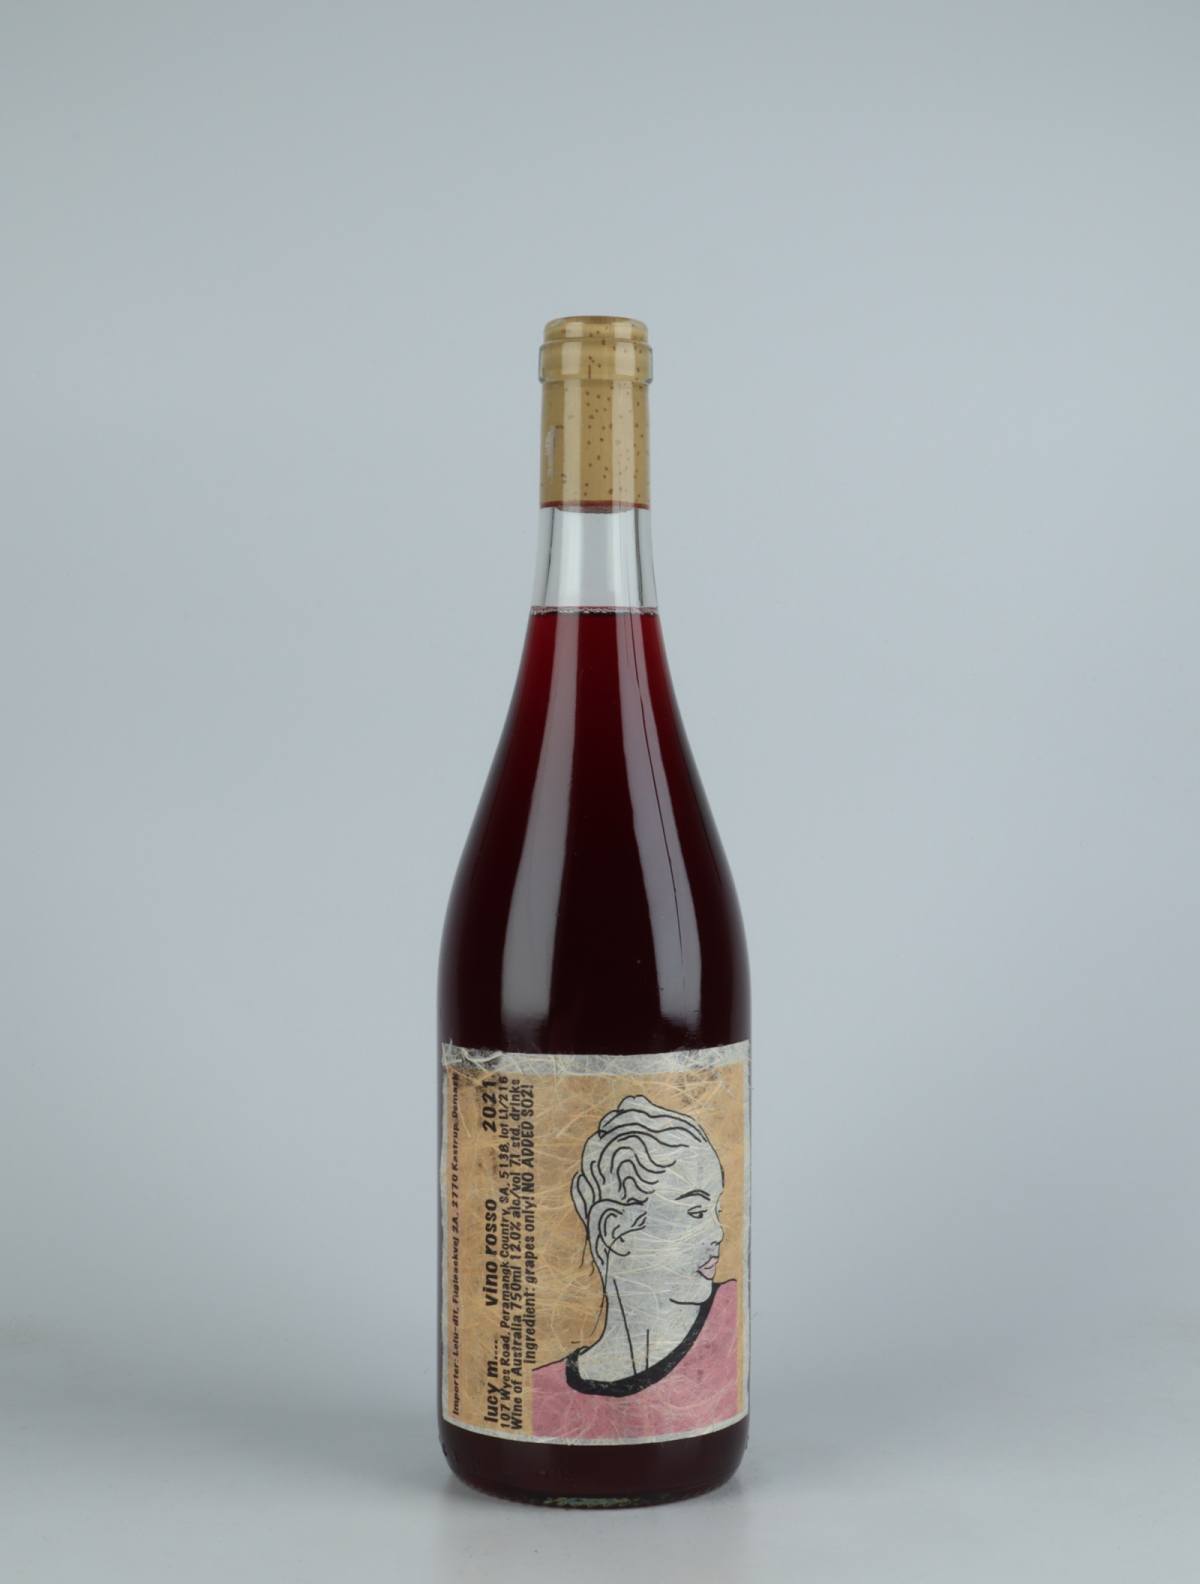 En flaske 2021 Vino Rosso Rødvin fra Lucy Margaux, Adelaide Hills i Australien